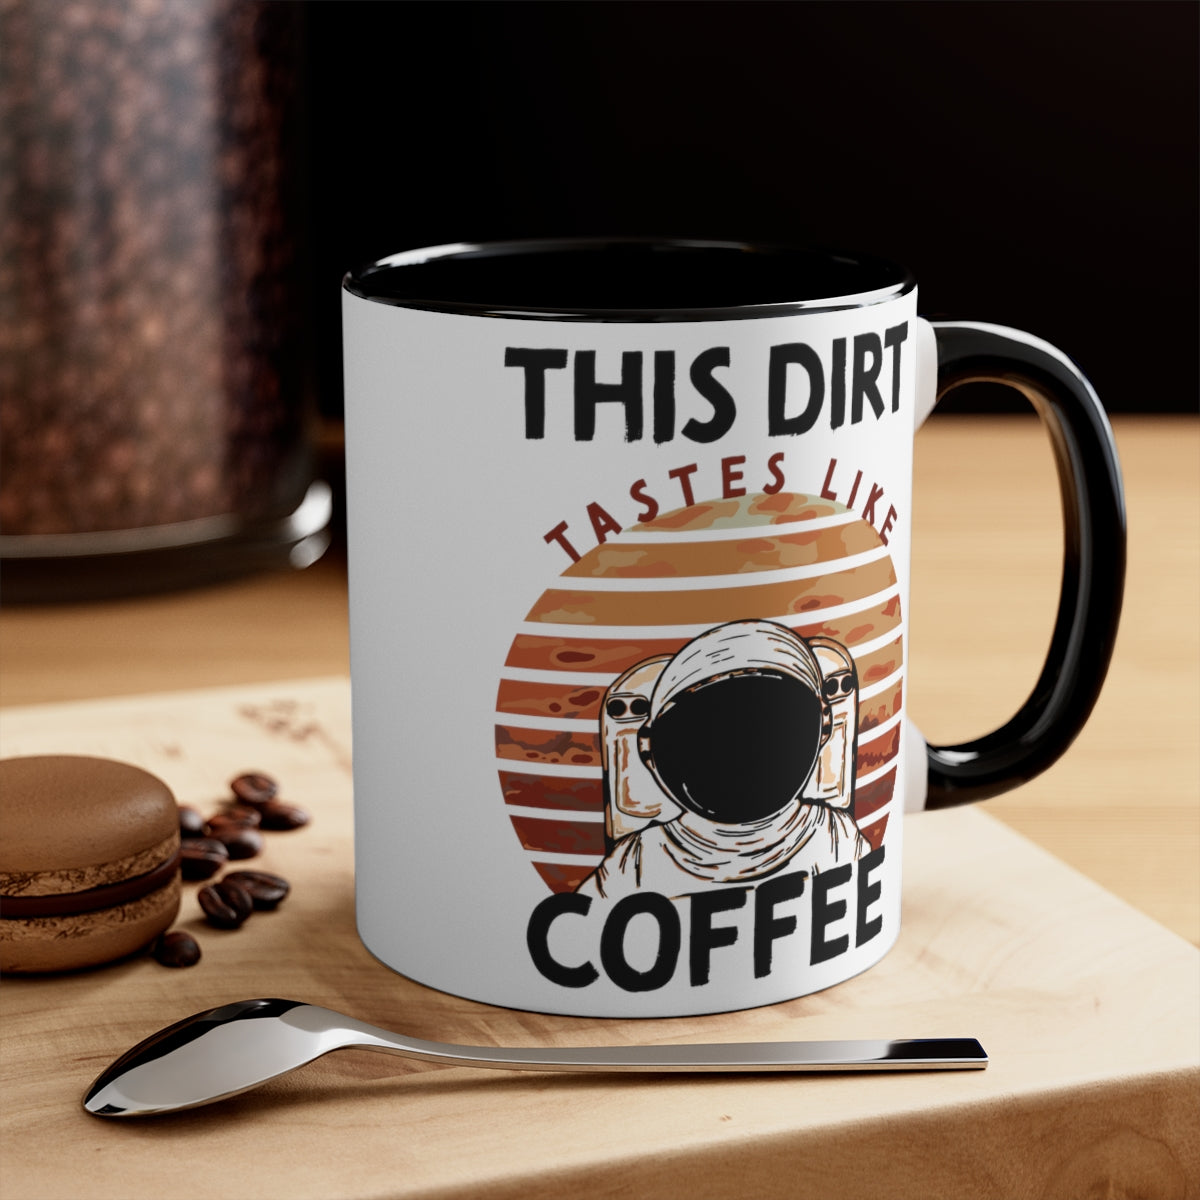 Mars Astronaut Coffee Mug - This Dirt Tastes Like Coffee, 11oz Mug